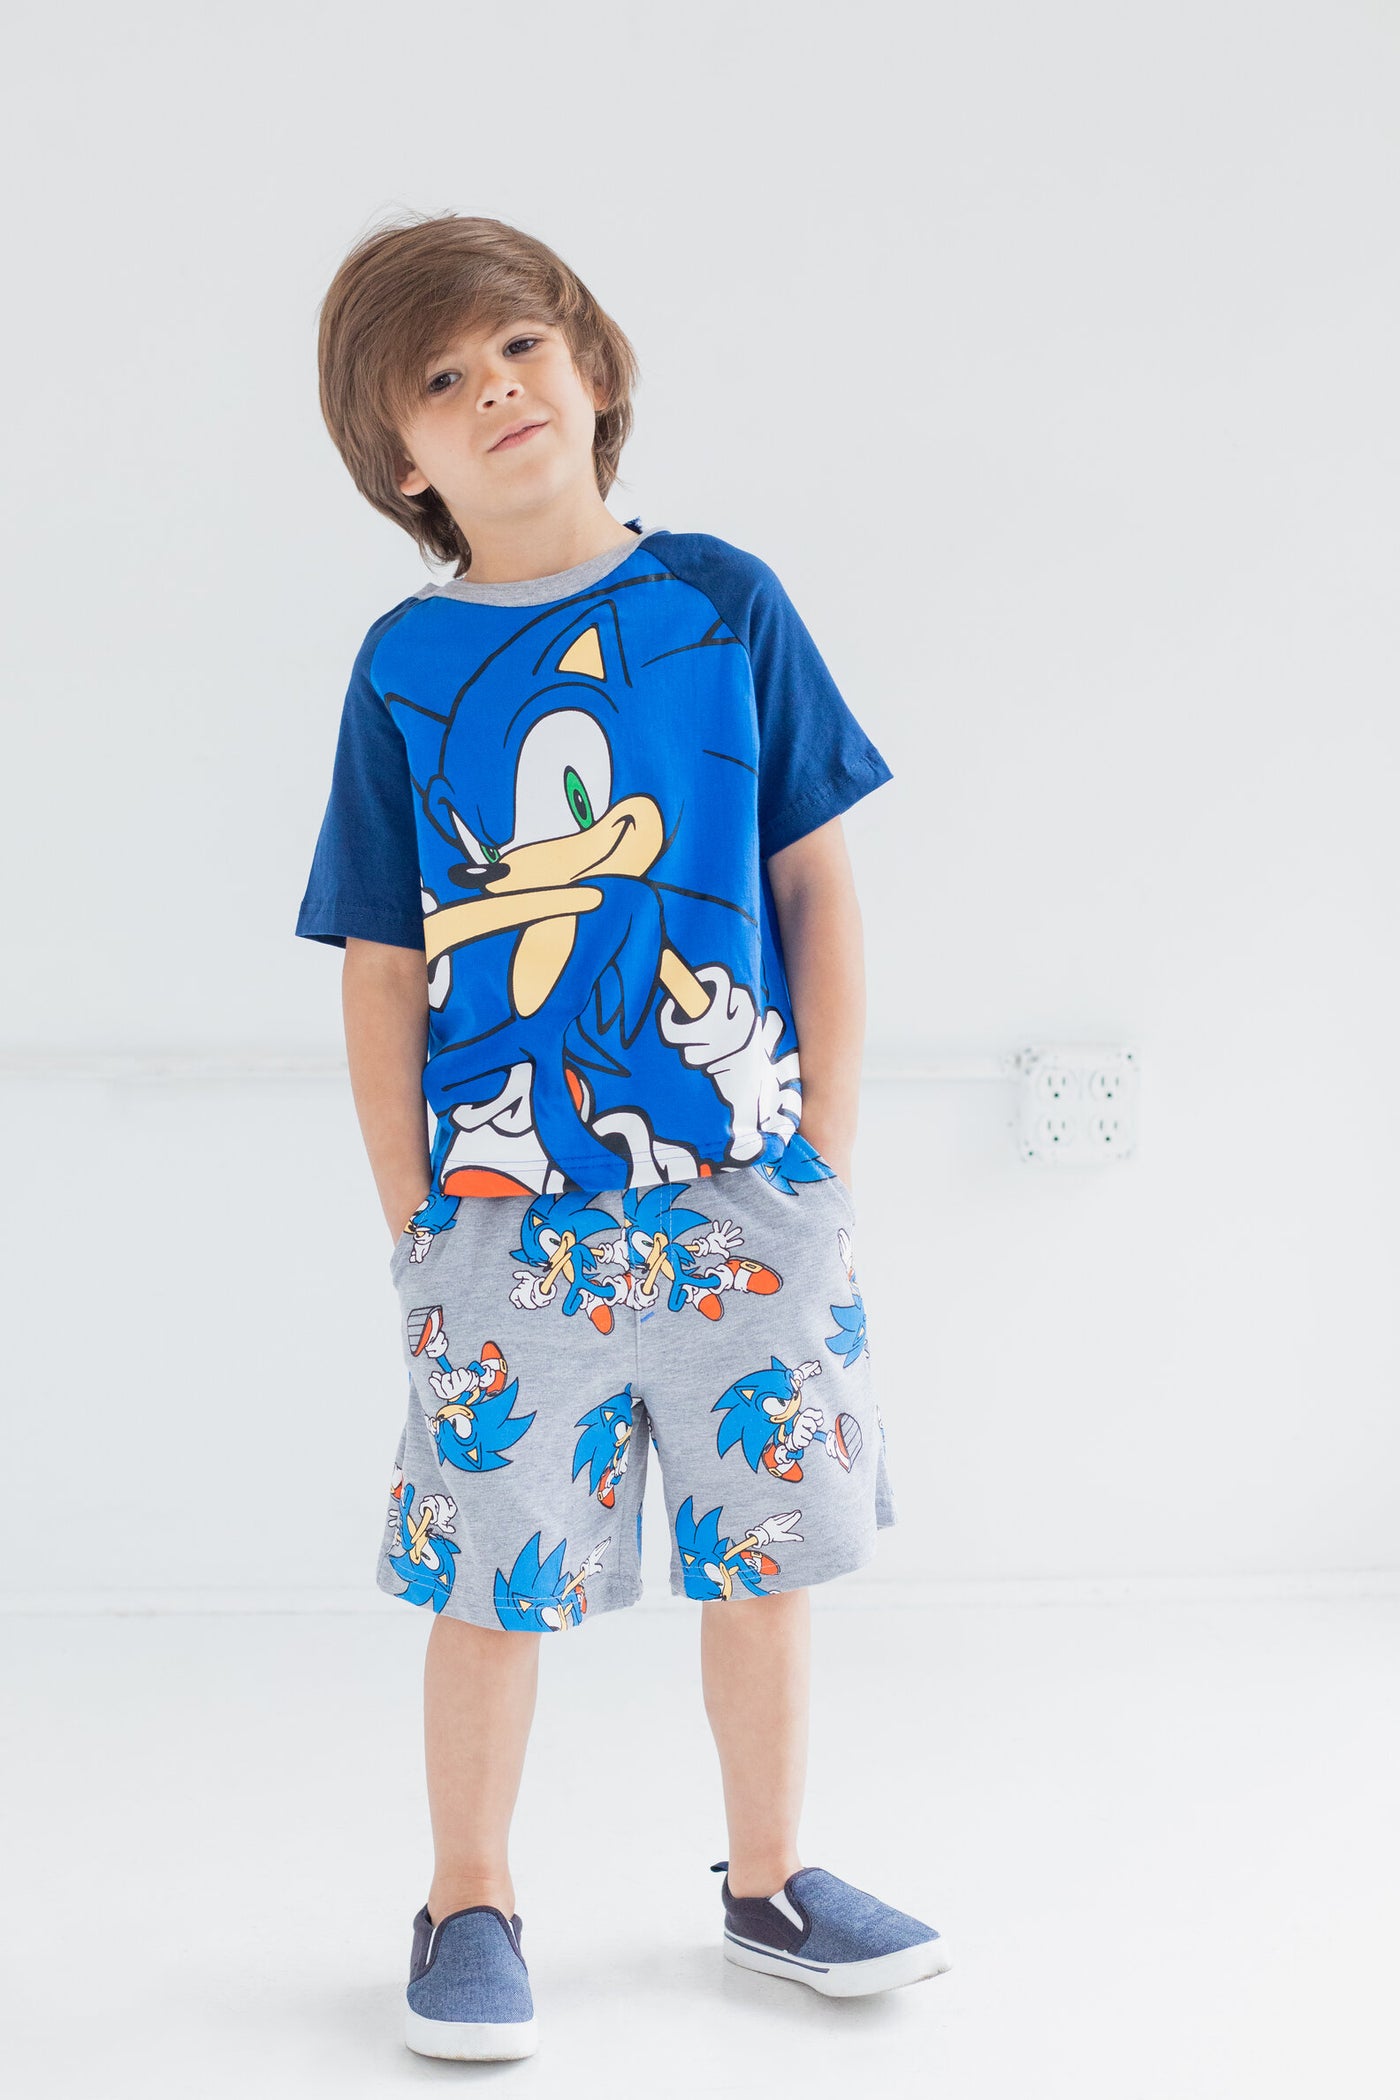 Conjunto de camiseta y pantalones cortos de Sonic the Hedgehog de SEGA